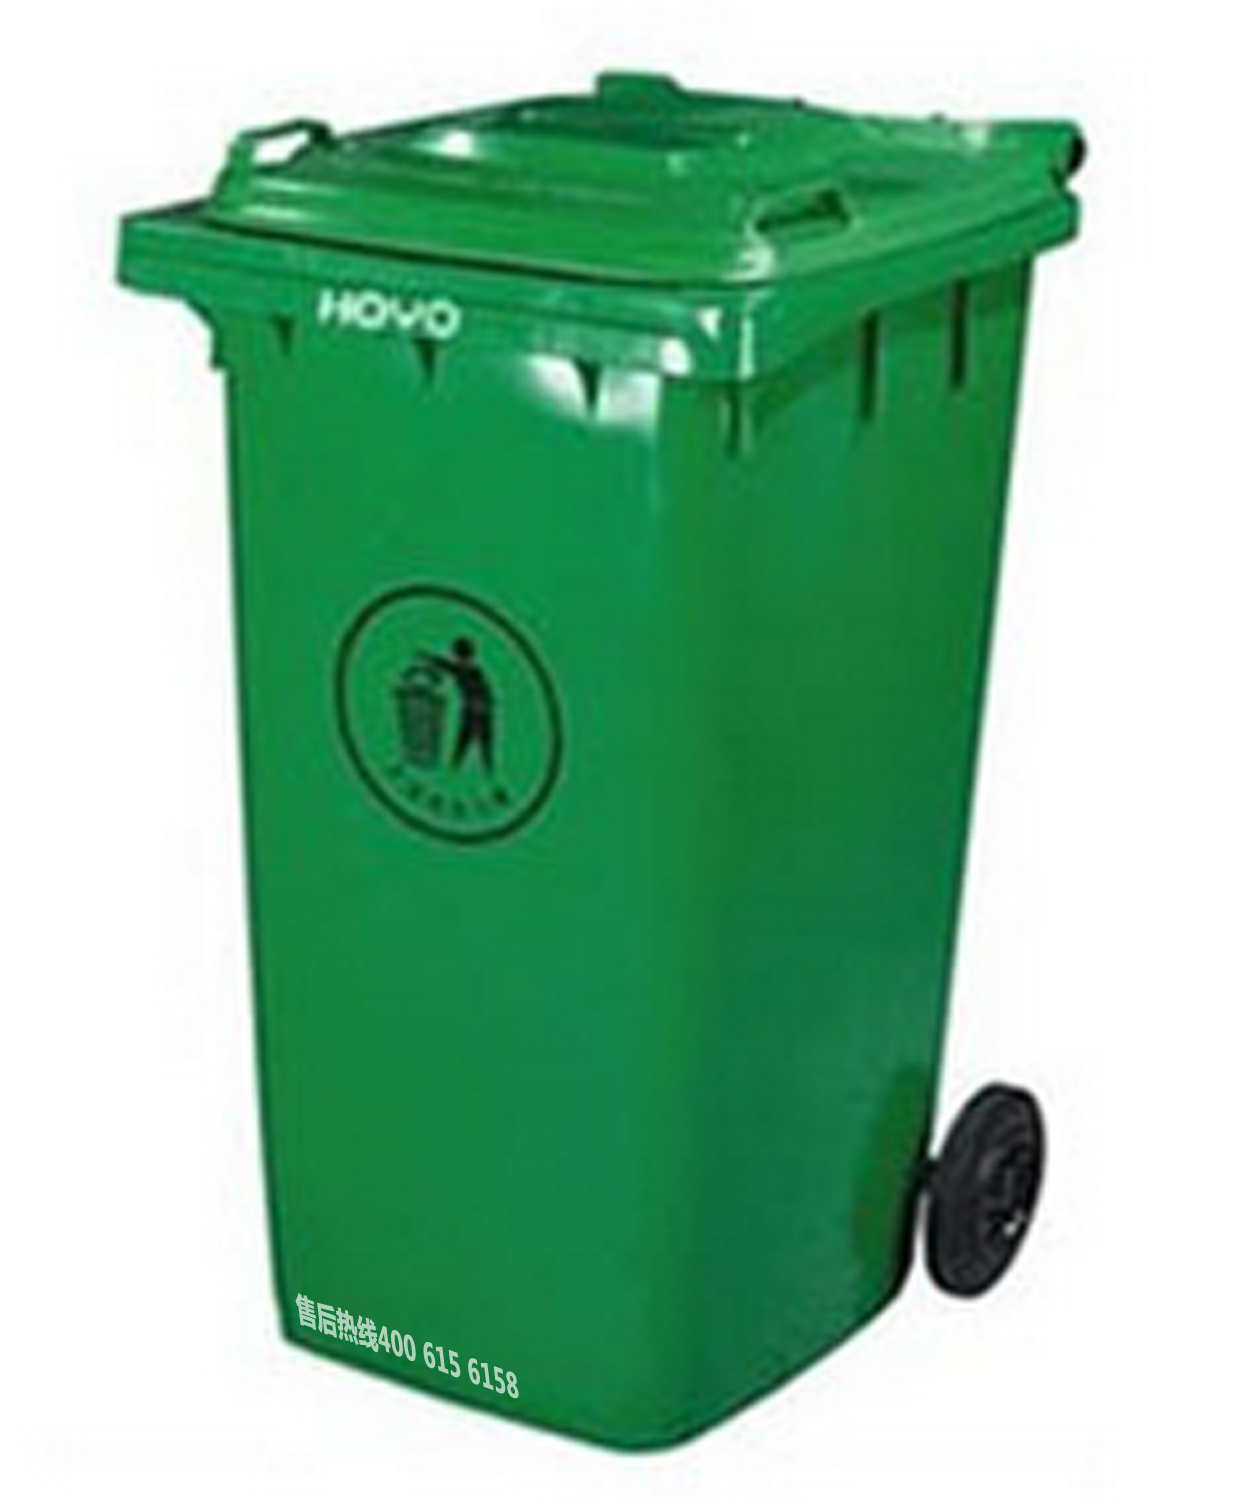 沈阳 佳和清洁 售 分类 垃圾桶 医疗 垃圾桶 户外景观 垃圾桶 室内 垃圾桶 垃圾箱